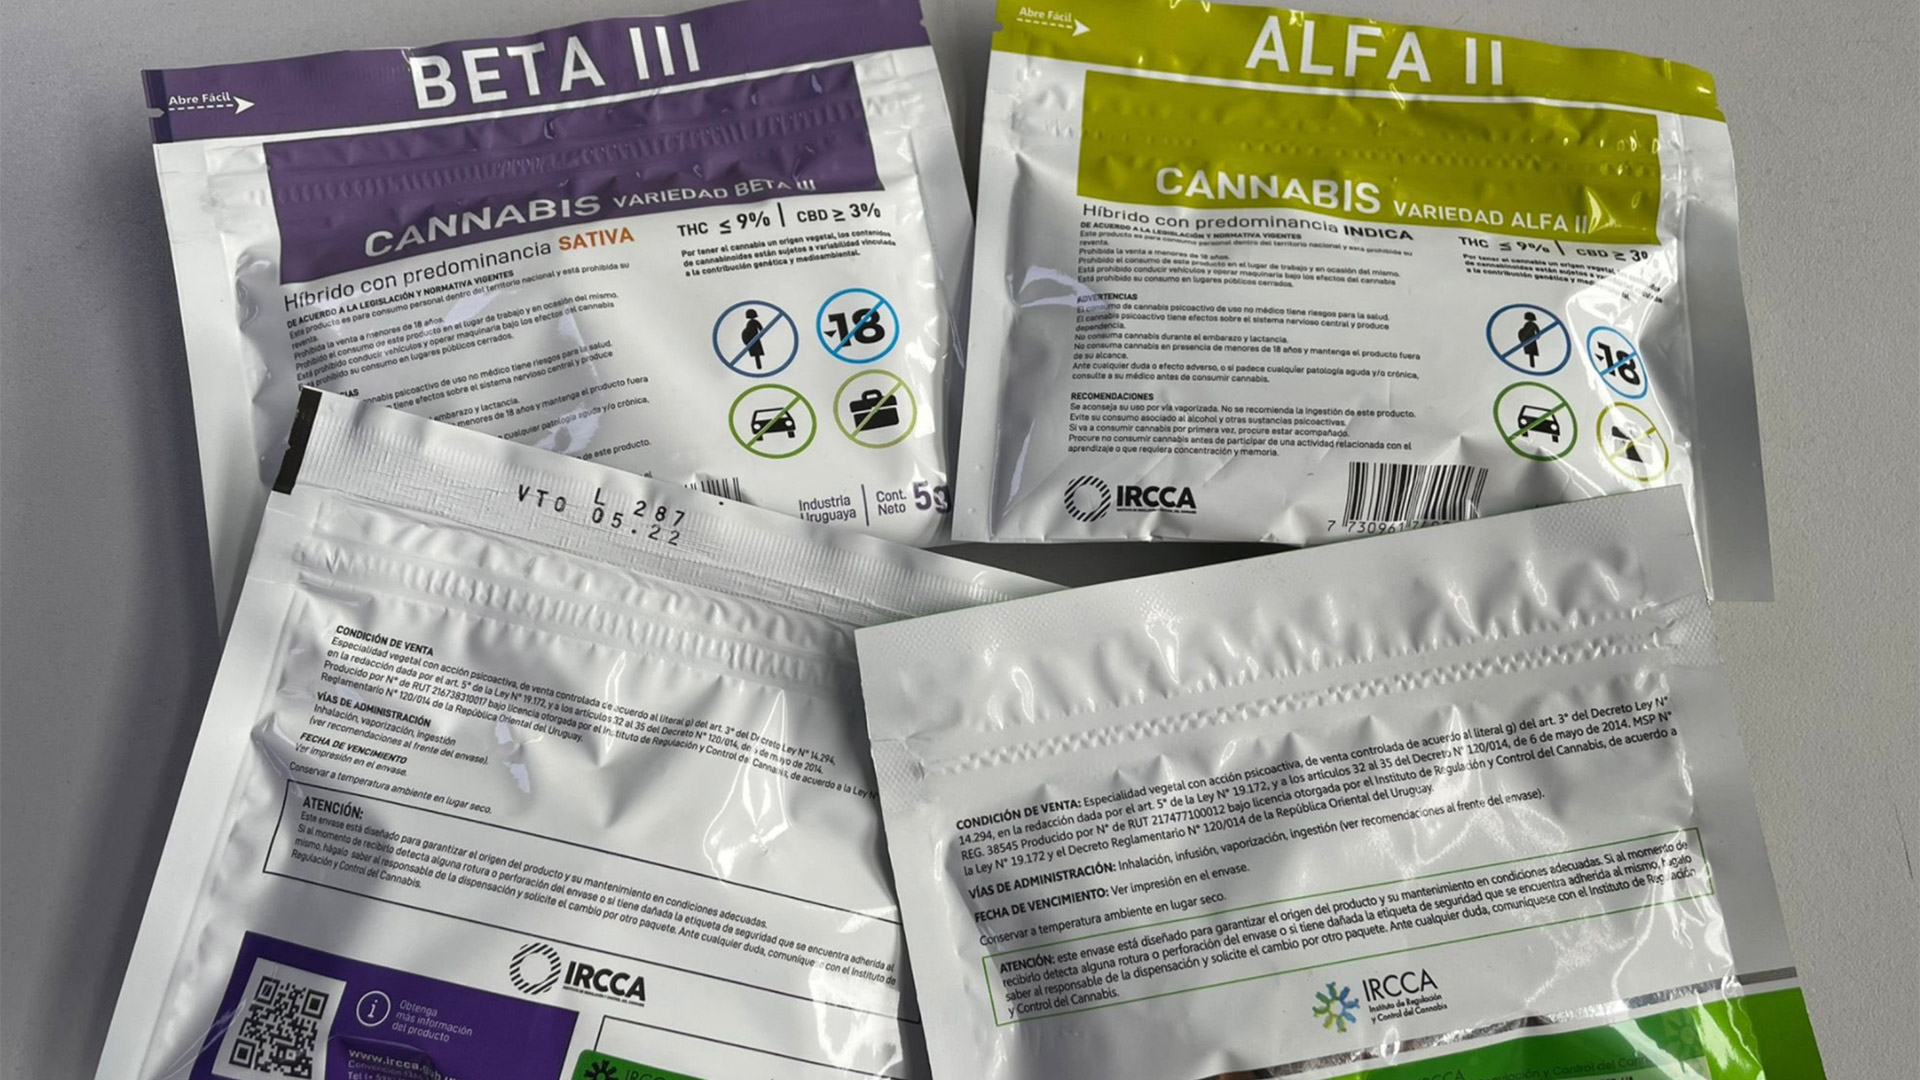 Según las empresas que producen el cannabis disponible en farmacias, al permitir que clubes vendan su producto a extranjeros representa una "competencia desleal" debido a la diferencia en los controles